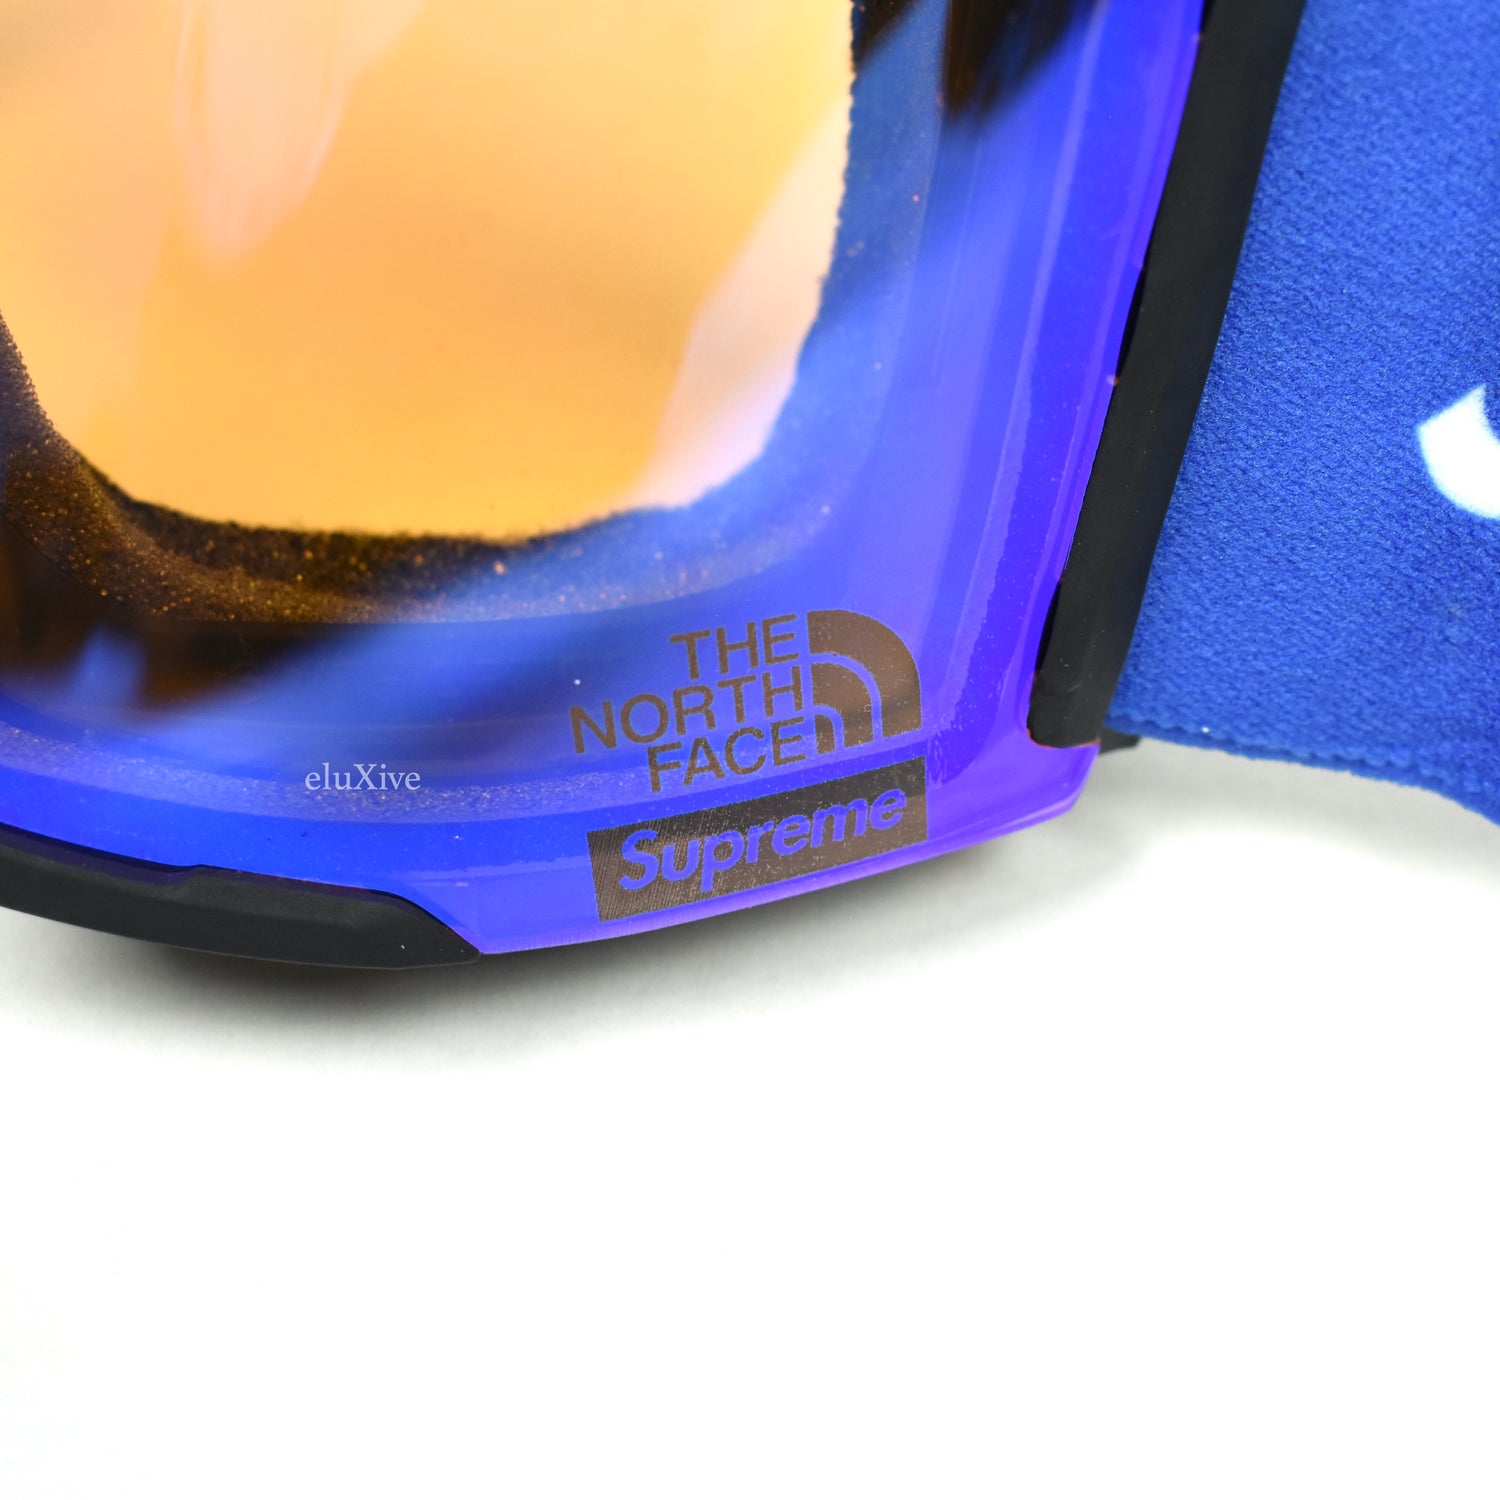 Supreme x Smith Snowboard / Ski Goggles - Blue FW15